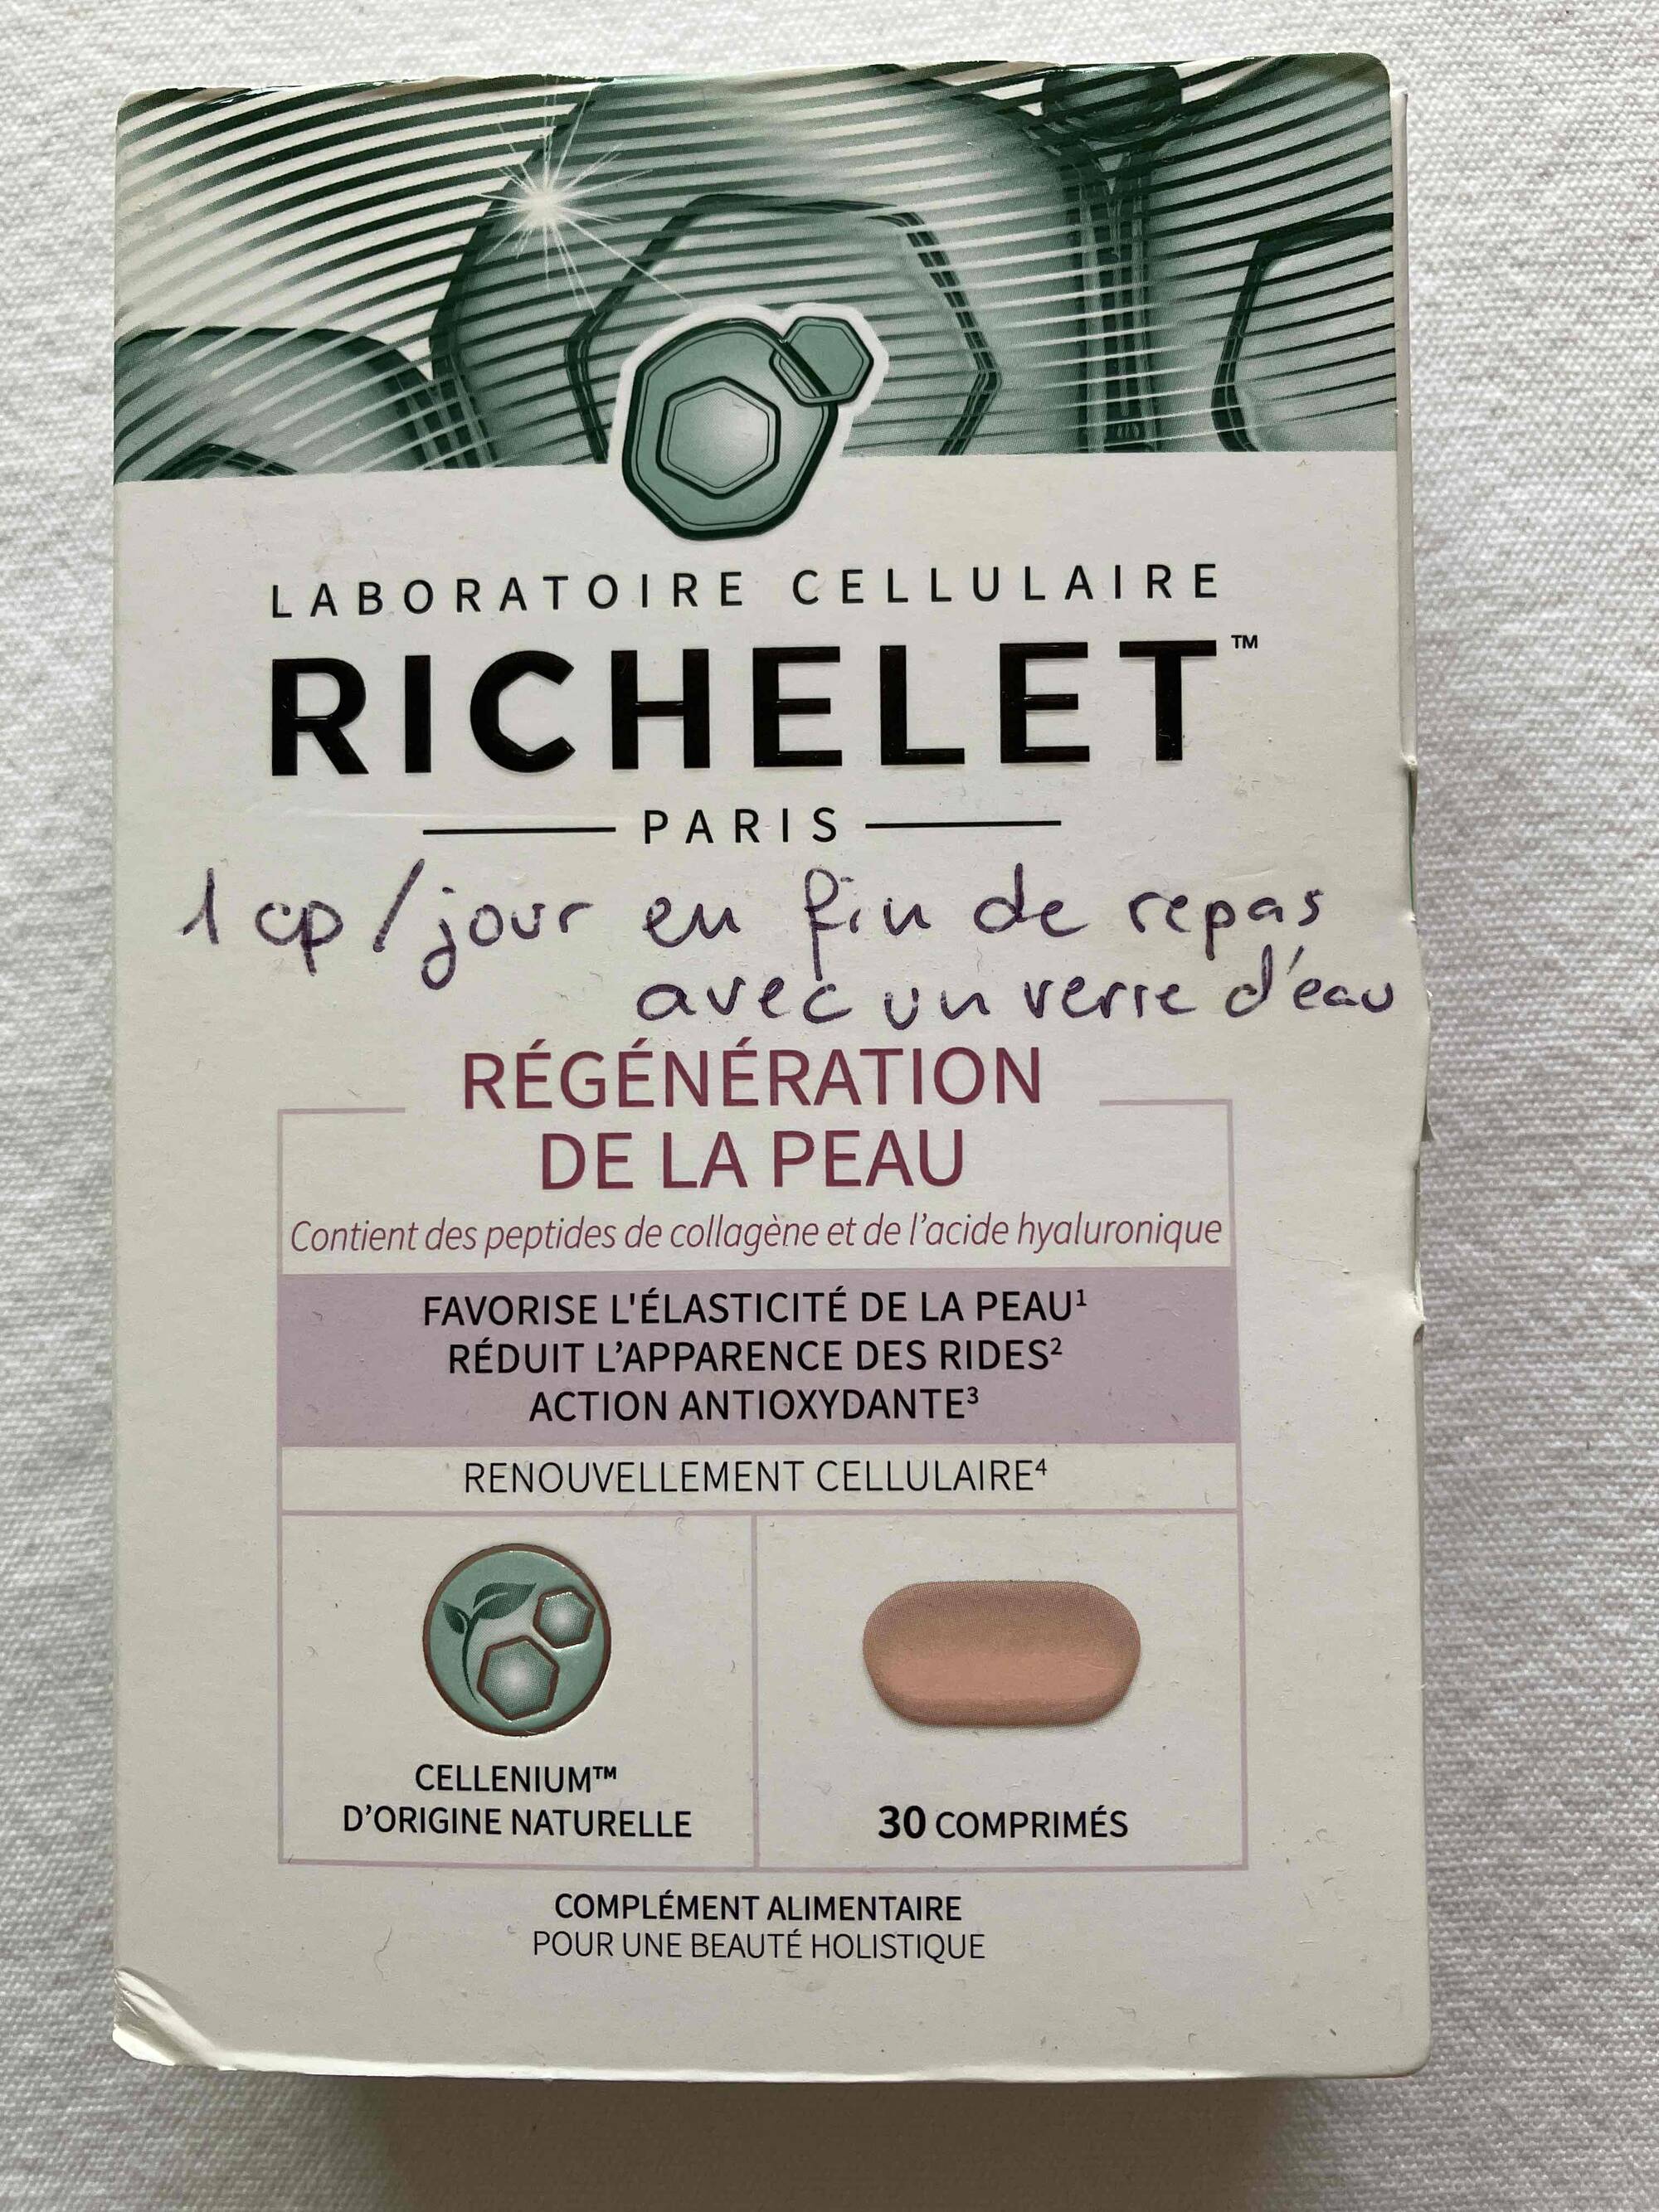 RICHELET - Regeneration de la peau